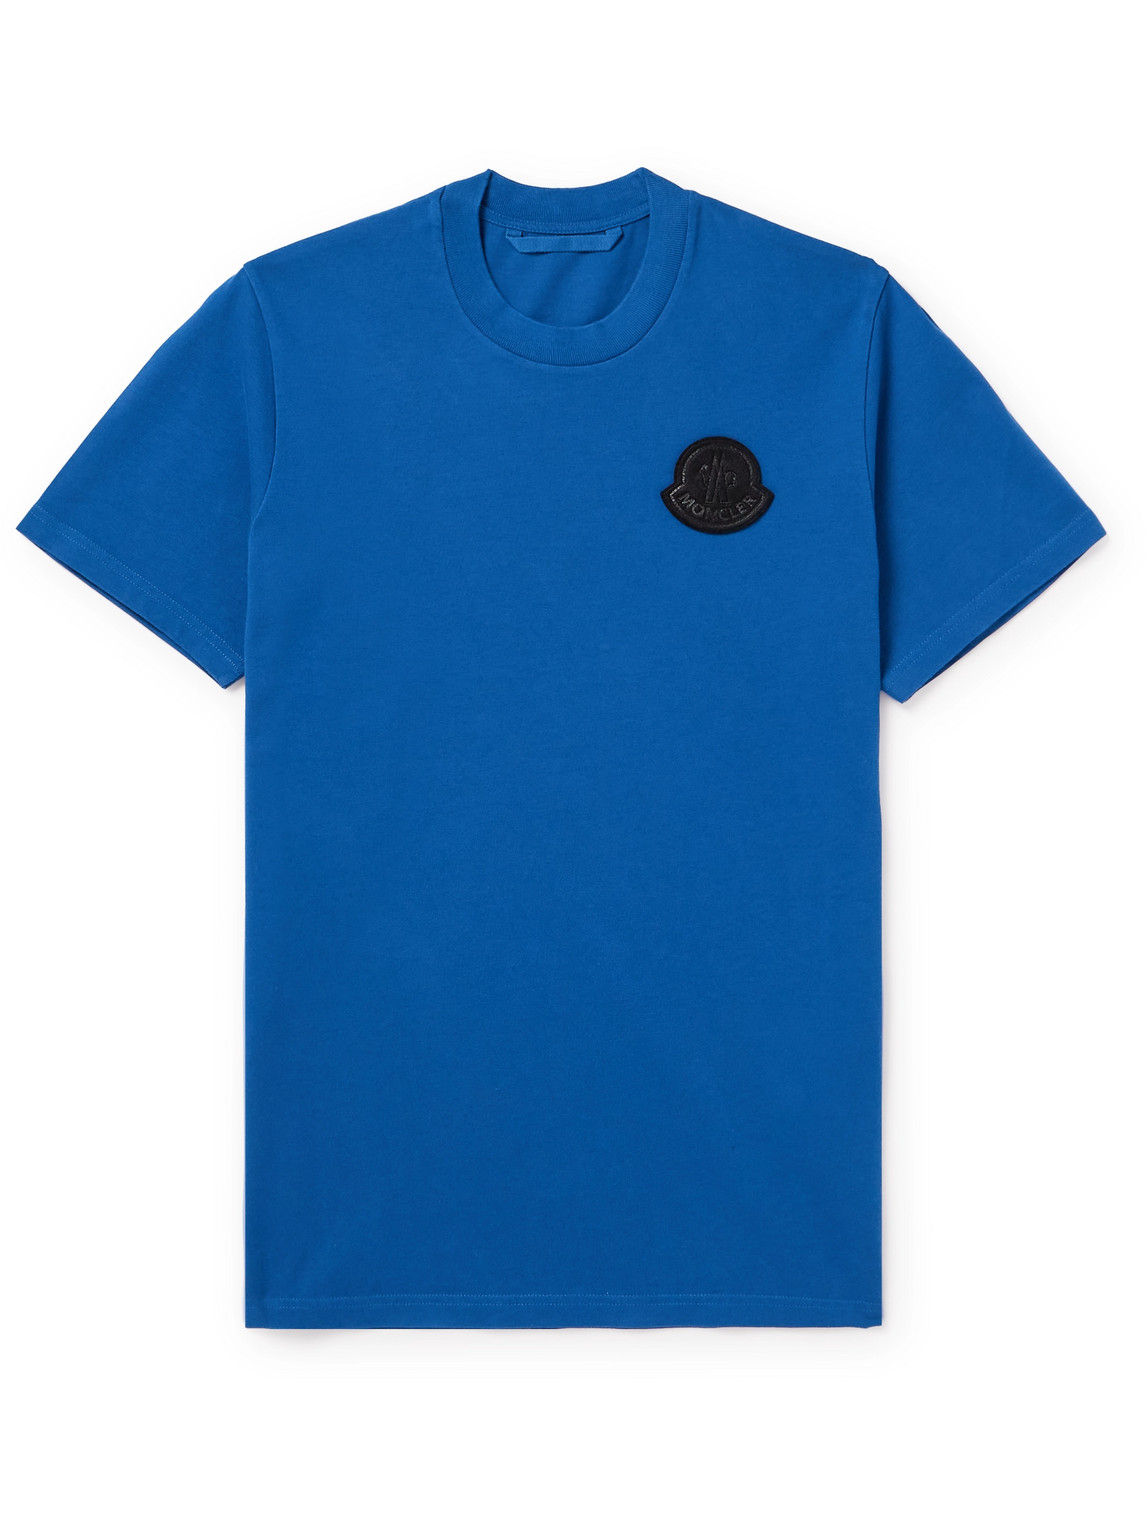 Moncler - Logo-Appliquéd Cotton-Jersey T-Shirt - Men - Blue - S von Moncler